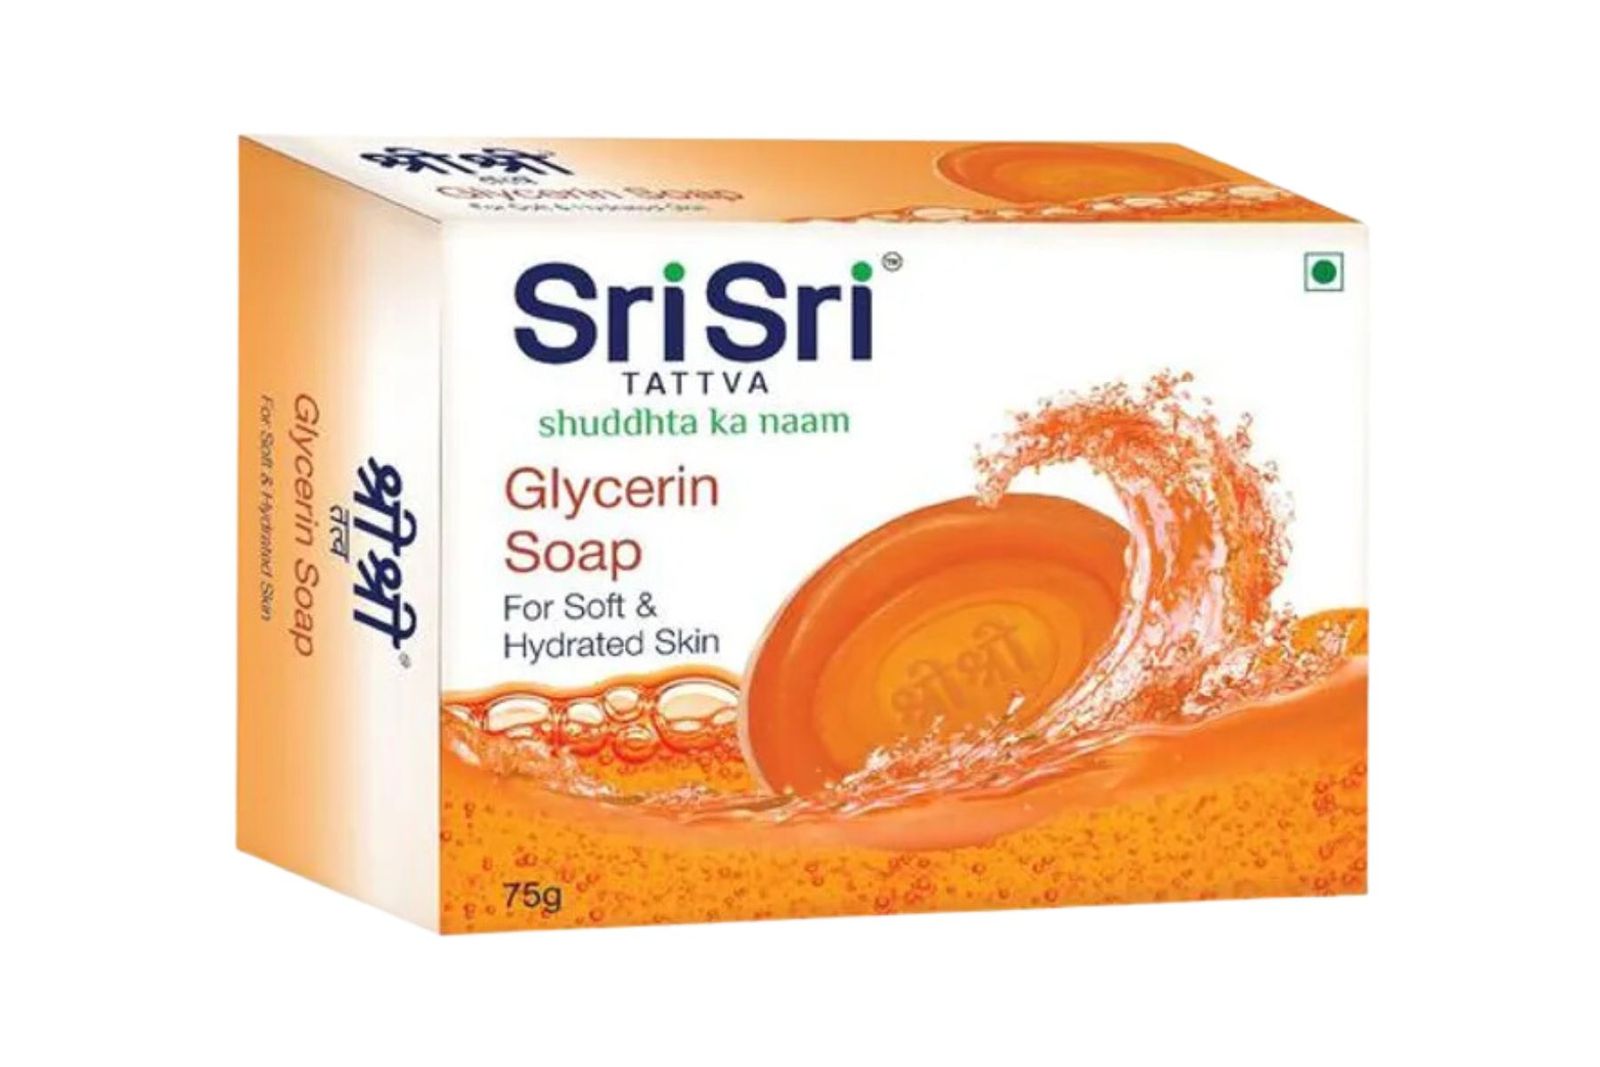 Sri Sri Tattva Glycerin Soap